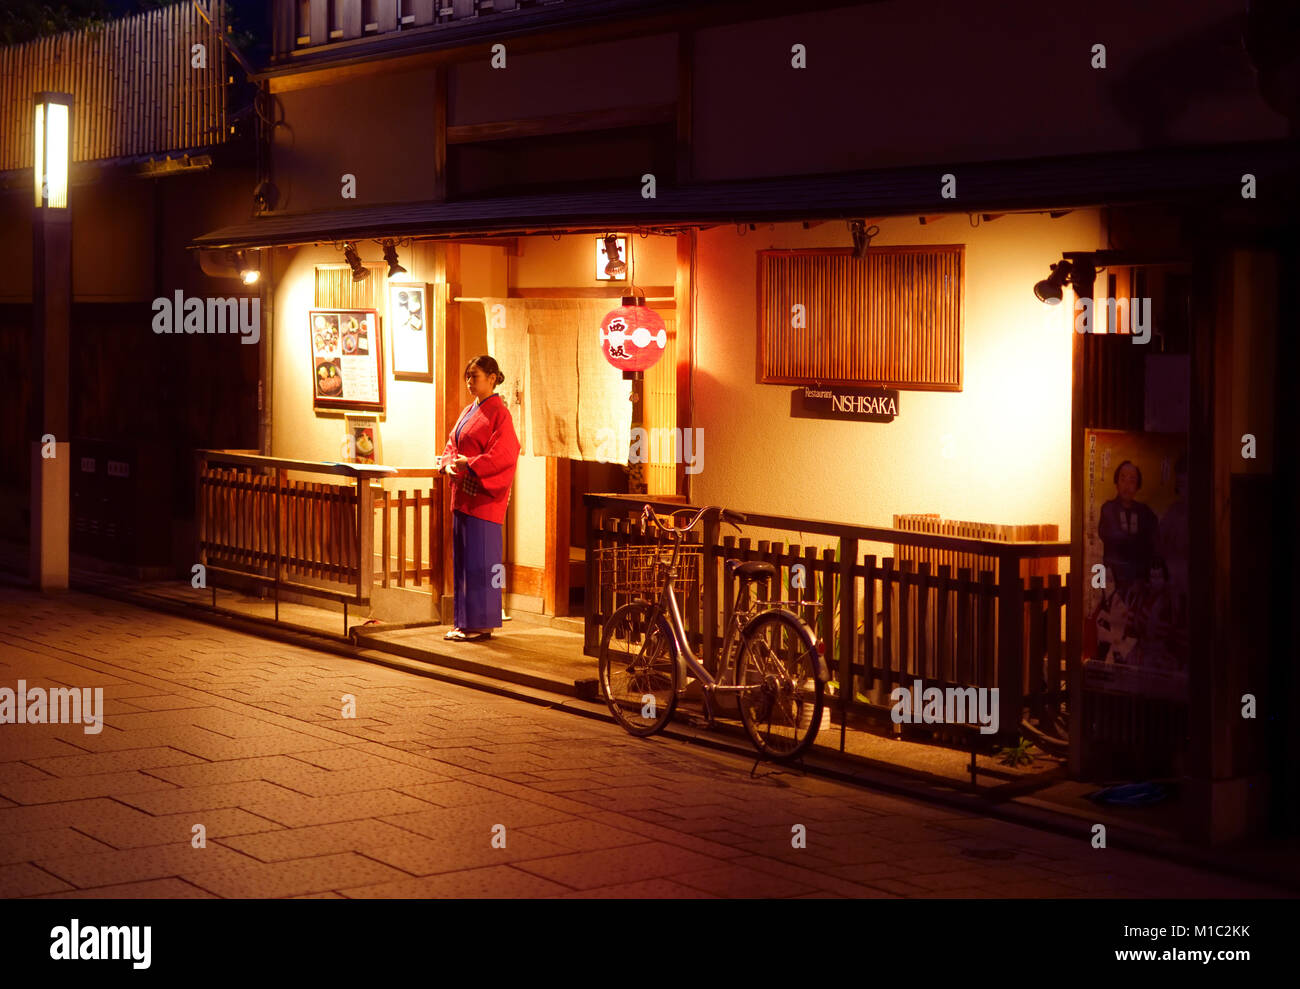 Führerschein verfügbar bei MaximImages.com - Frau, Restaurantangestellter begrüßt Gäste am Eingang eines traditionellen japanischen Restaurants Nishisaka in der Nähe Stockfoto